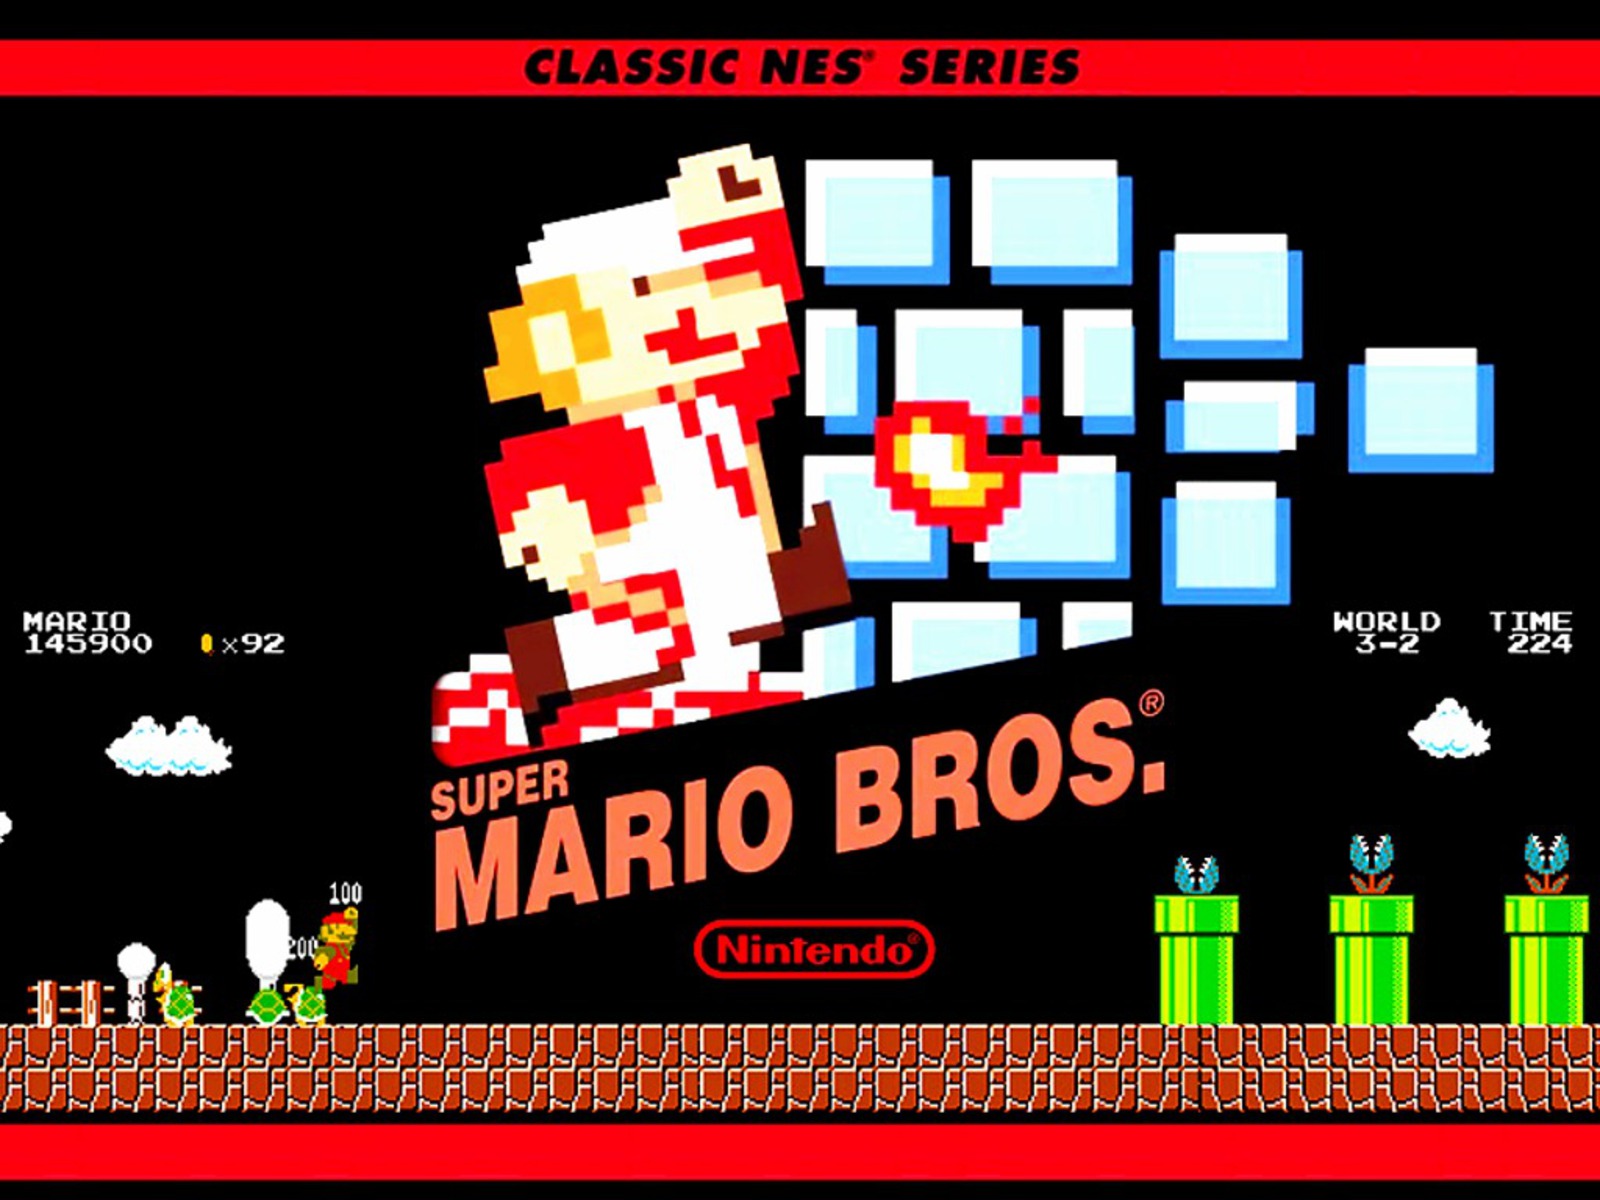 Download this Super Mario Bros picture